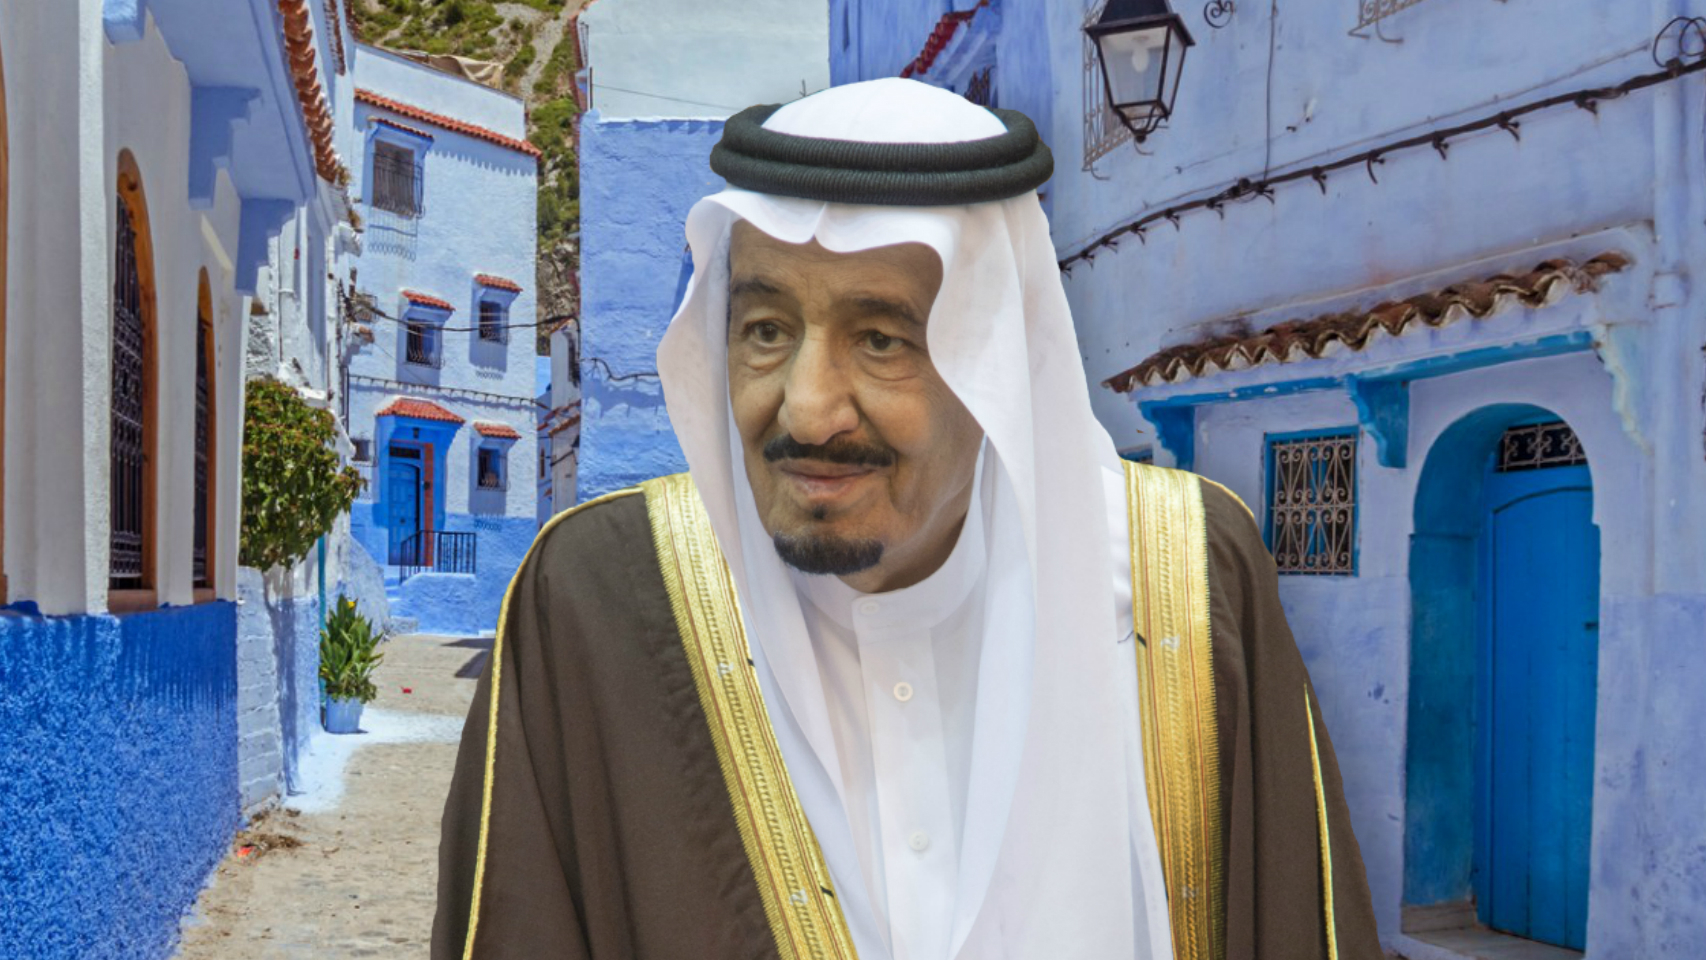 El rey de Arabia Saudí en un montaje frente a una calle típica de Tánger.